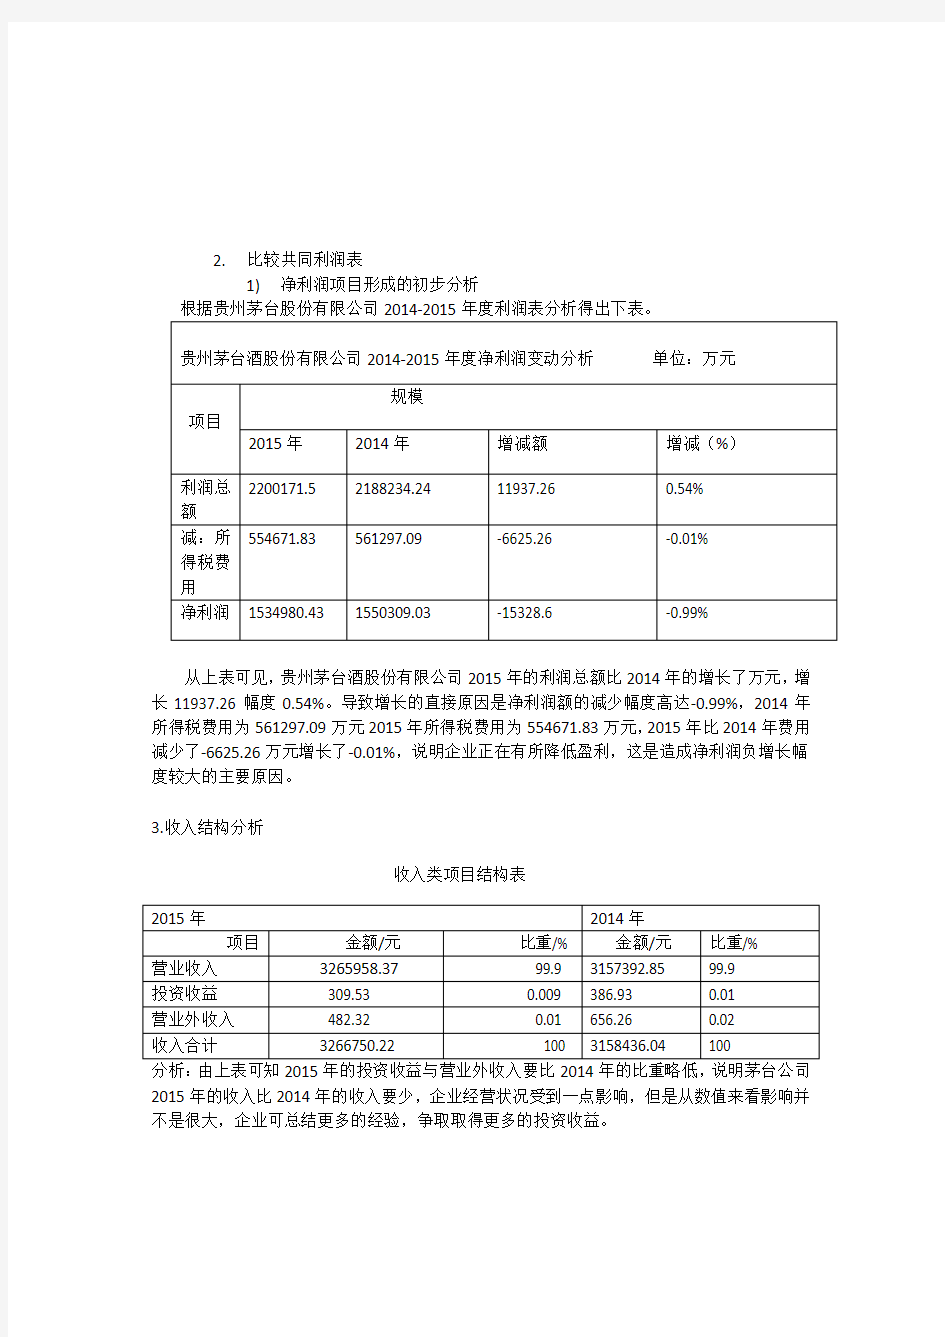 贵州茅台2014-2015利润表分析